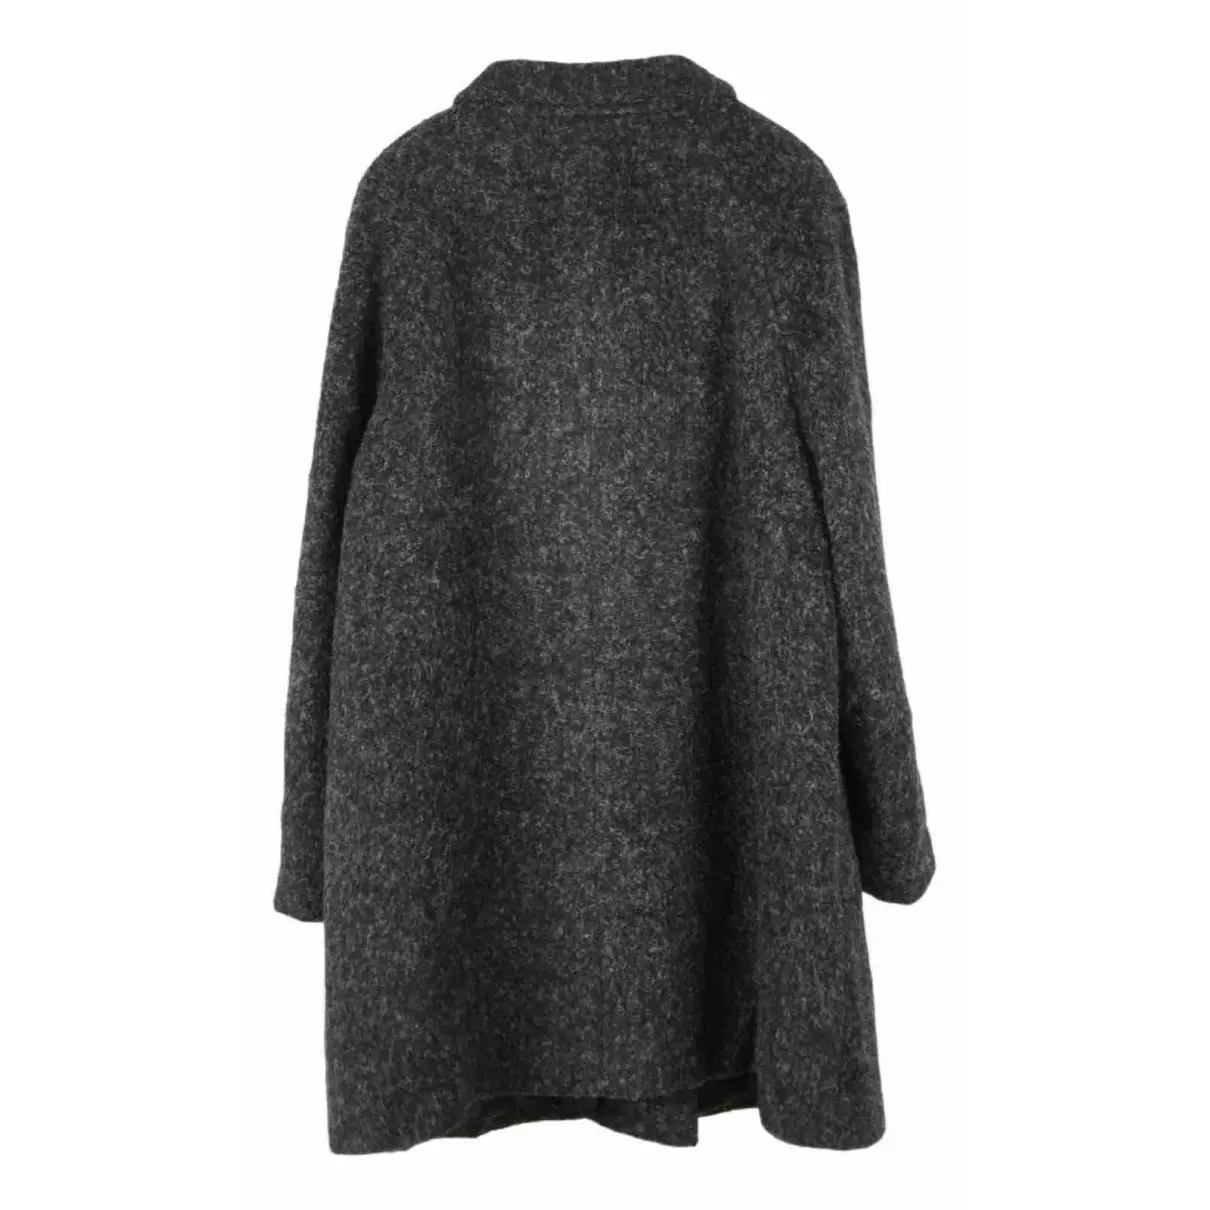 Buy Basler Wool coat online